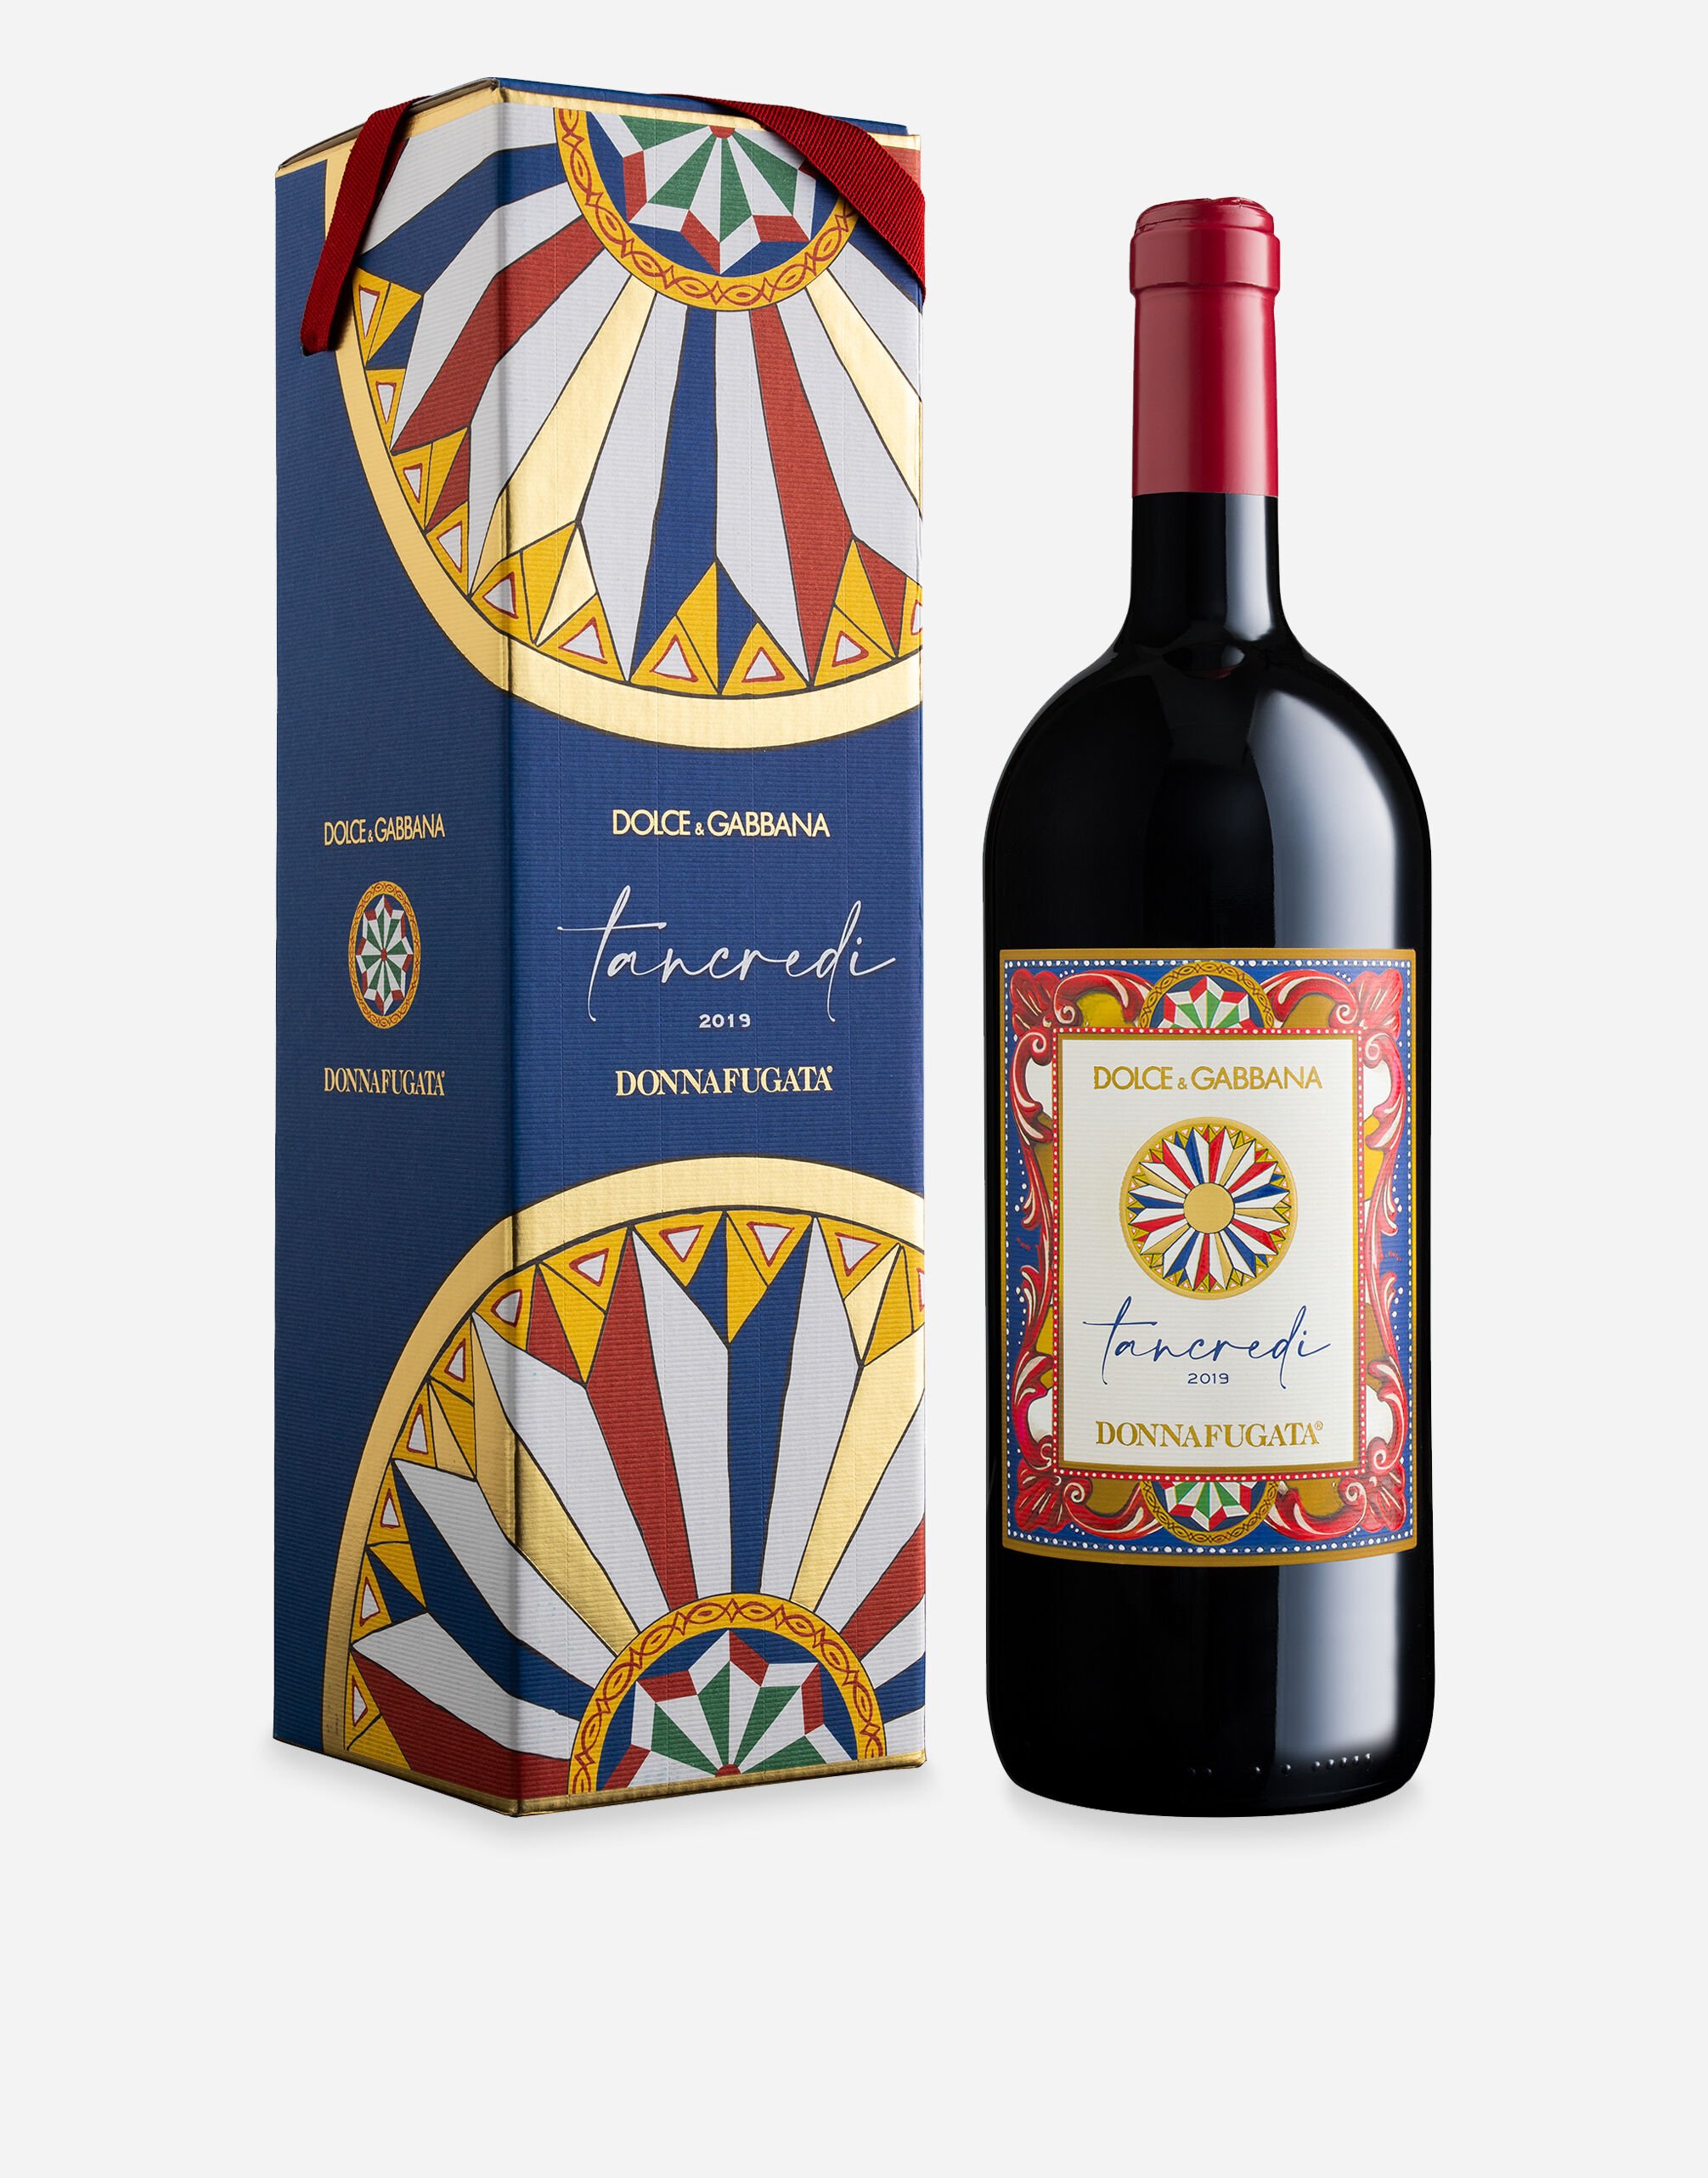 Dolce & Gabbana TANCREDI 2019 - Terre Siciliane IGT Rosso (Magnum 1.5L) Single box Multicolor PW0420RES75